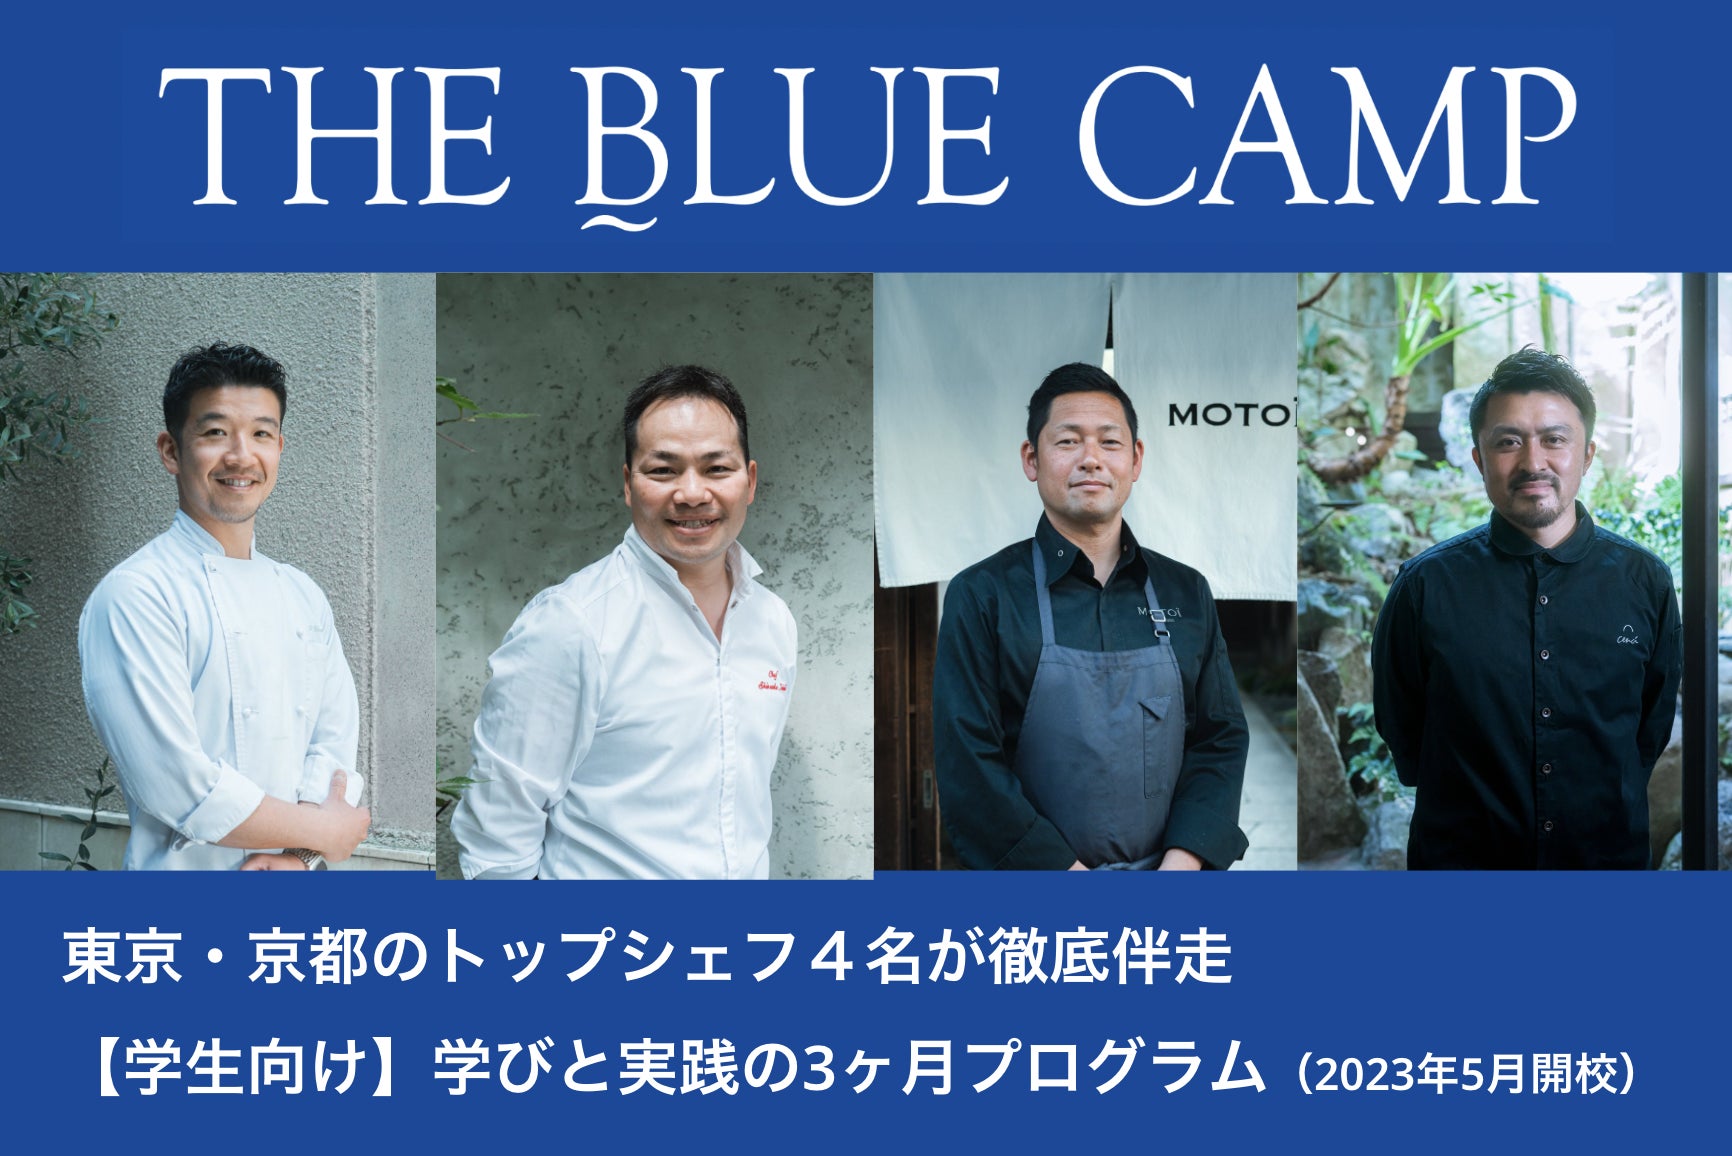 “次世代”の学生たちと東京と京都のトップシェフがともに海の未来を考え行動する『THE BLUE CAMP』が始動